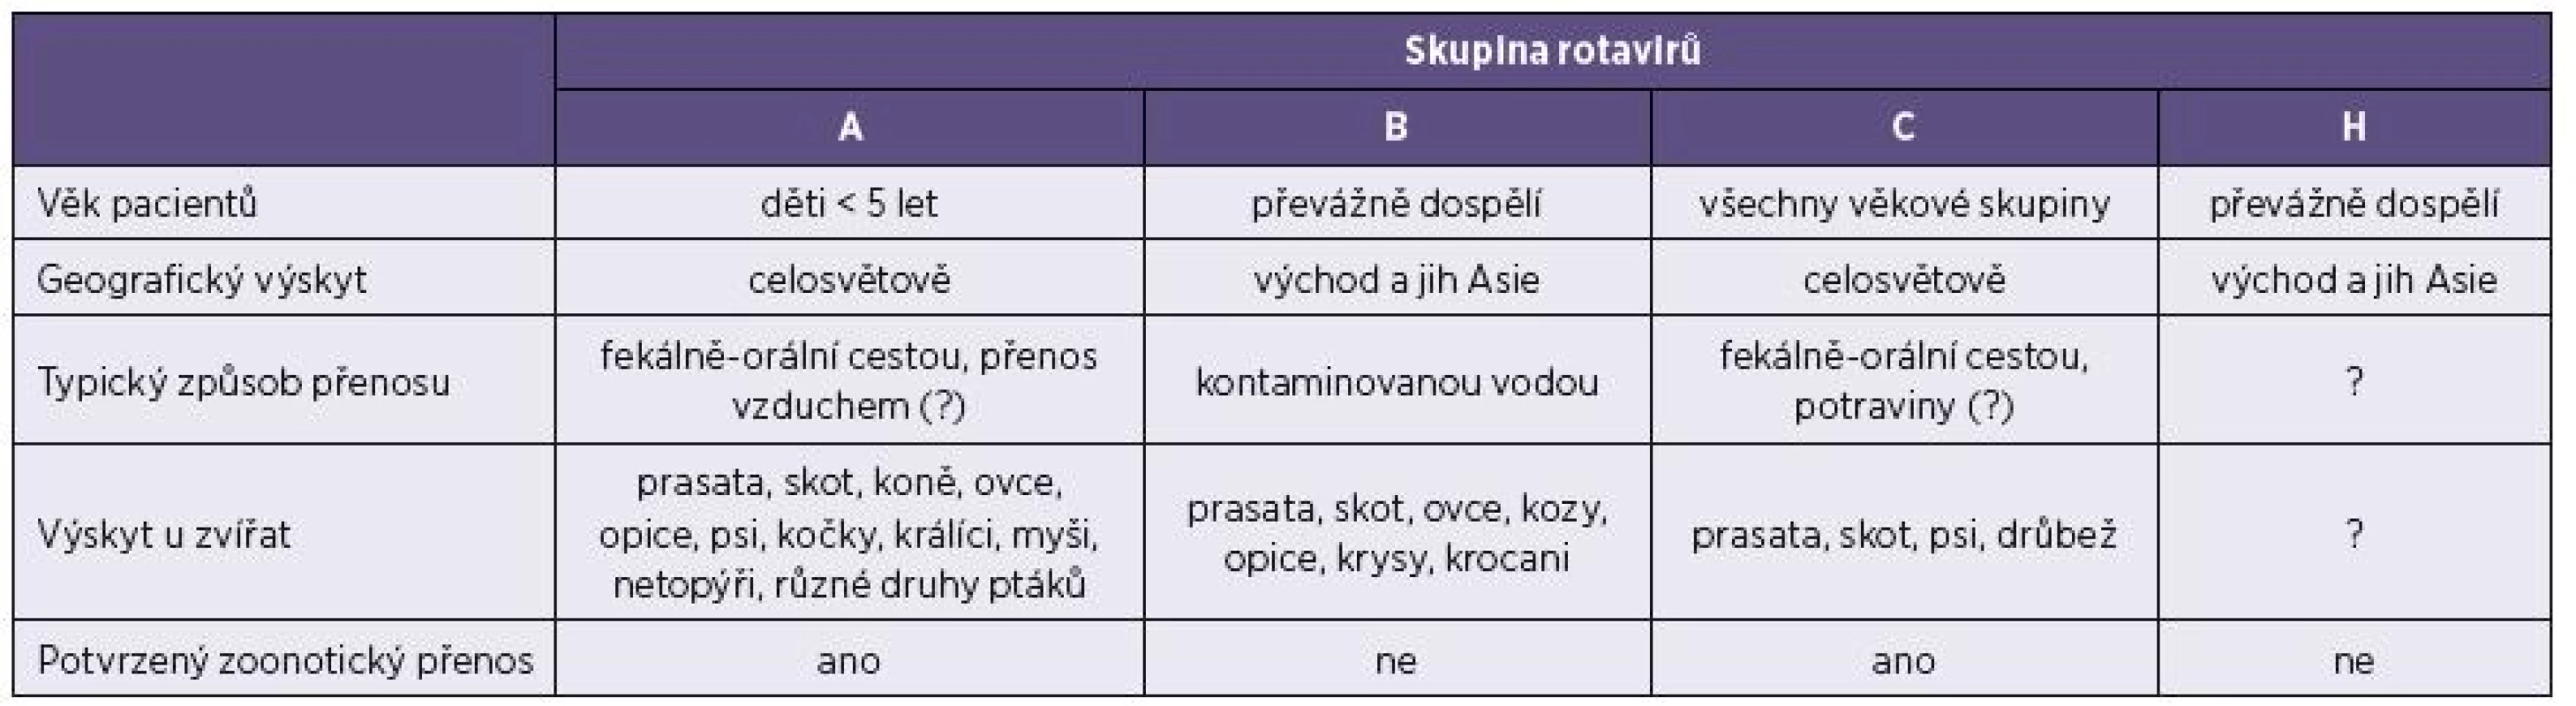 Hlavní charakteristiky rotavirů způsobujících infekce lidí
Table 2. Main characteristics of rotaviruses associated with human infections